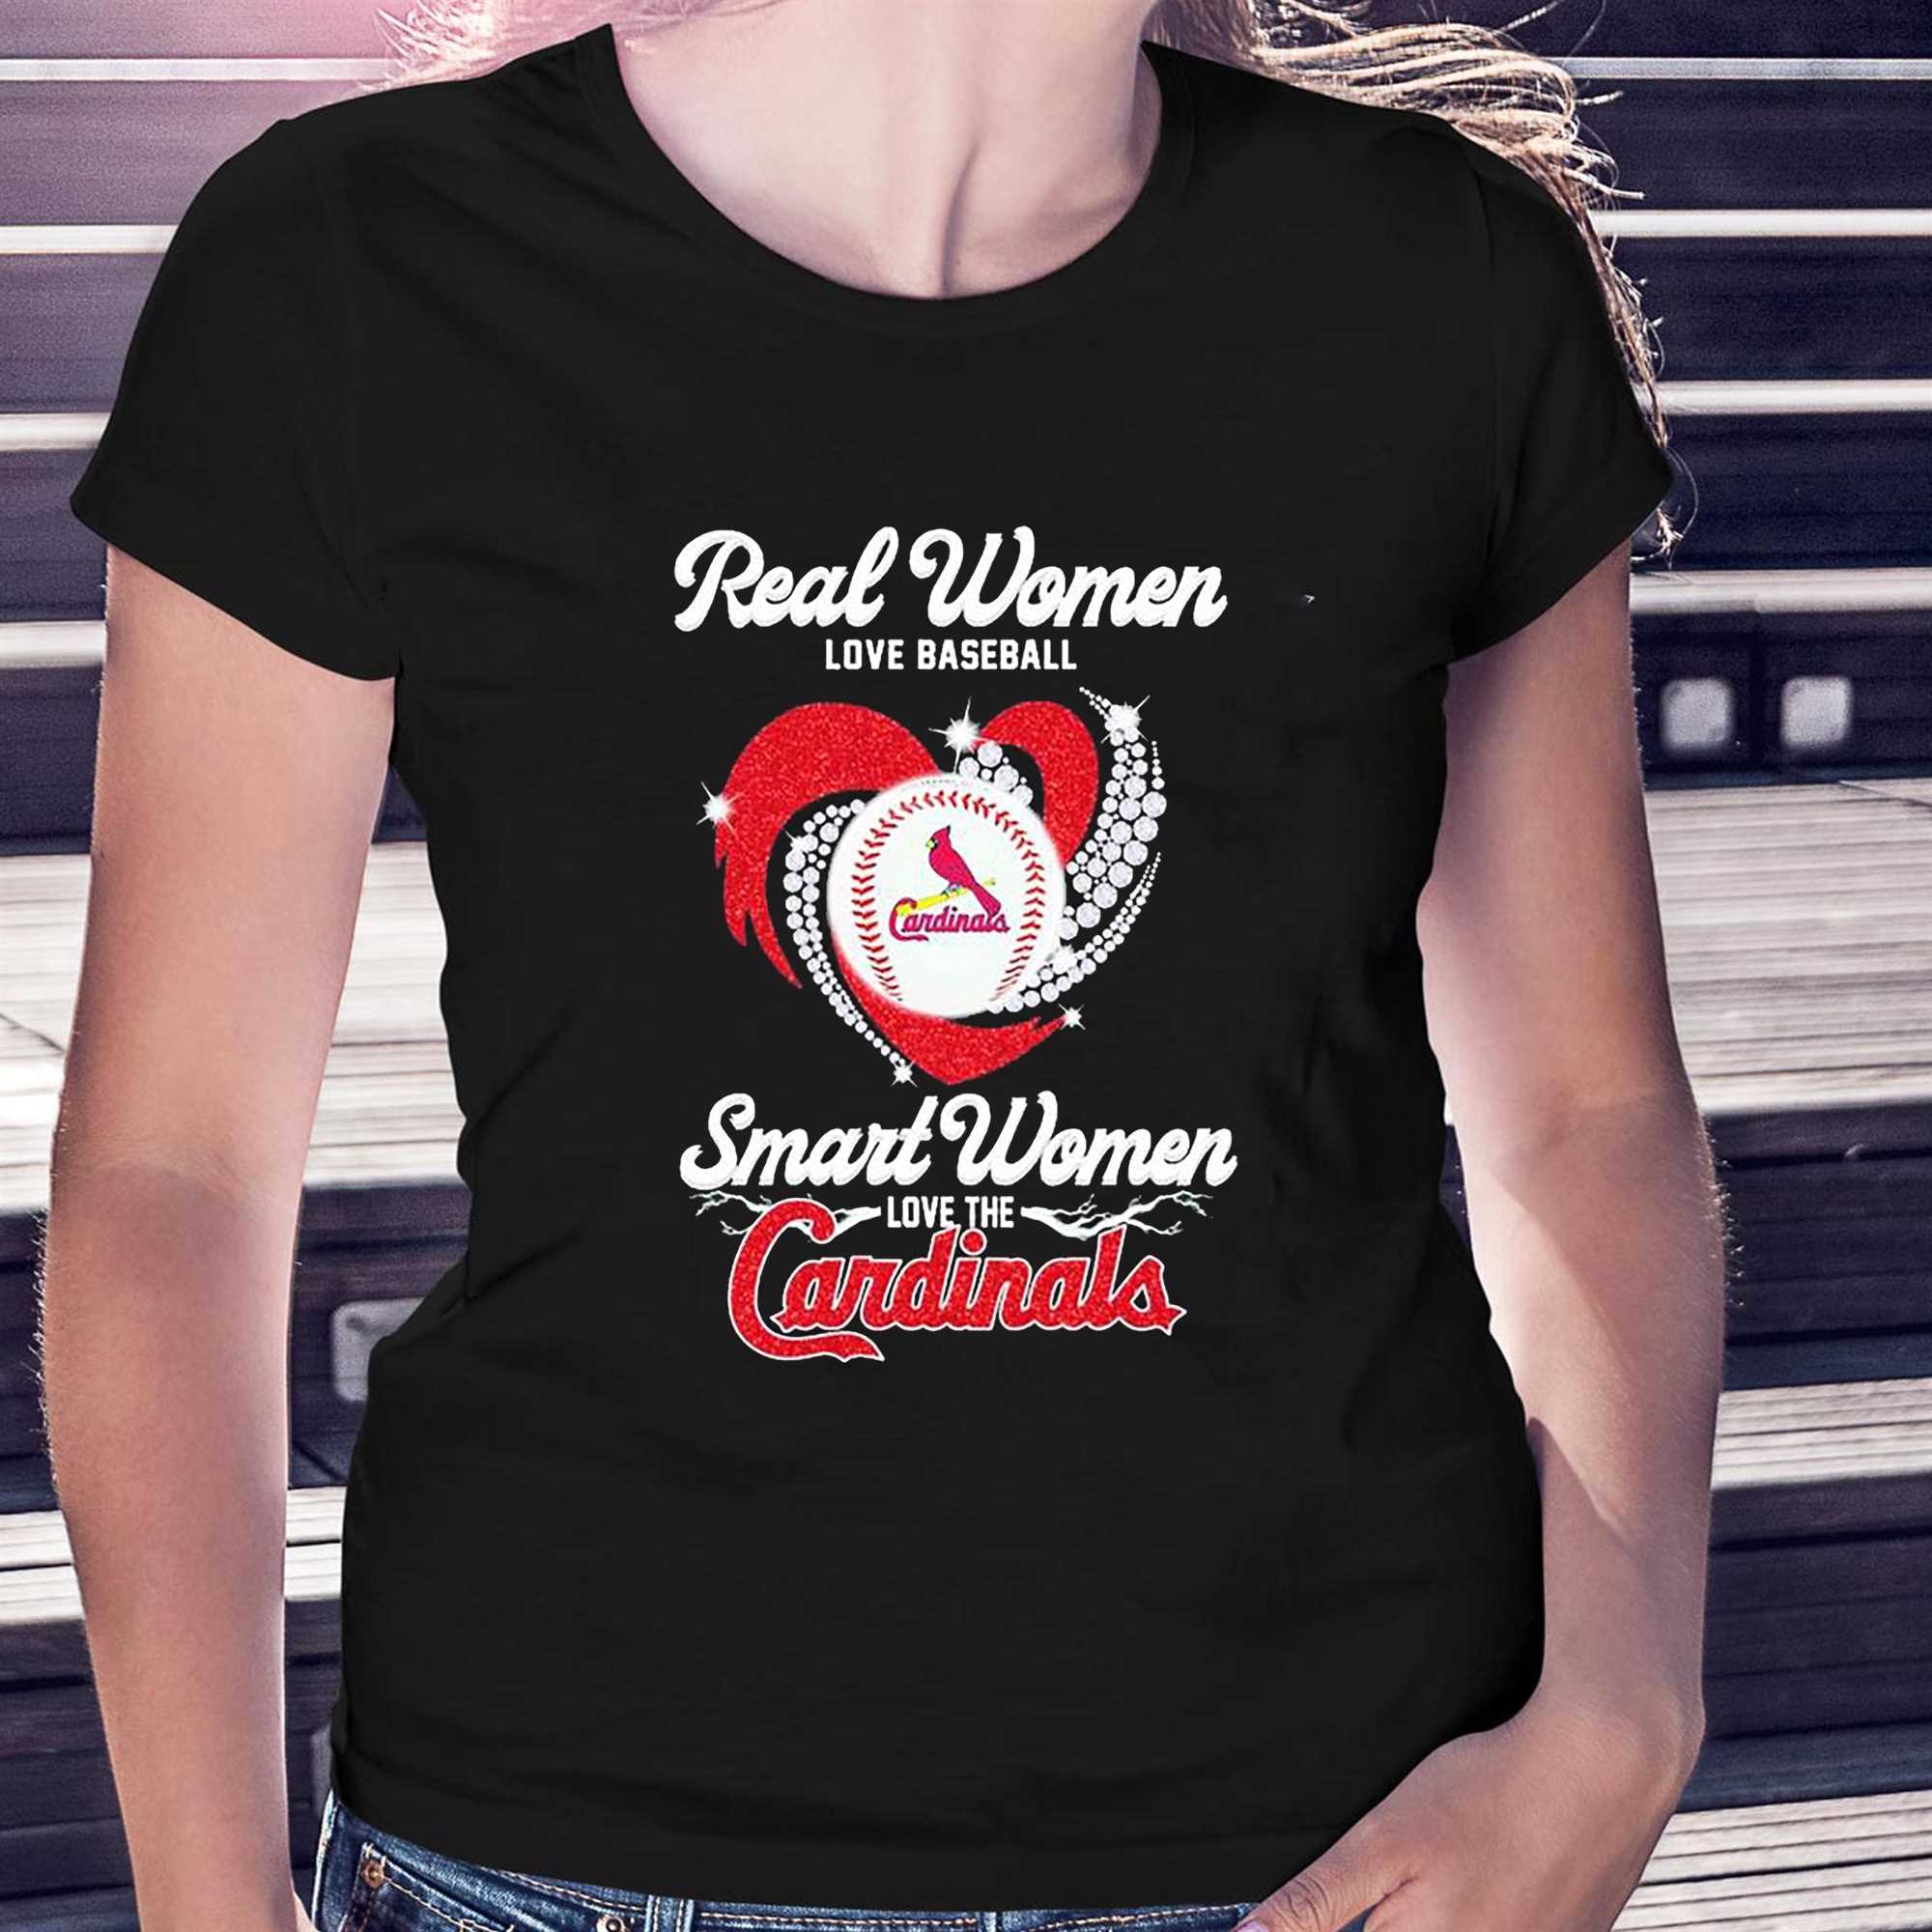 Real Women Love Baseball Smart Women Love The St. Louis Cardinals